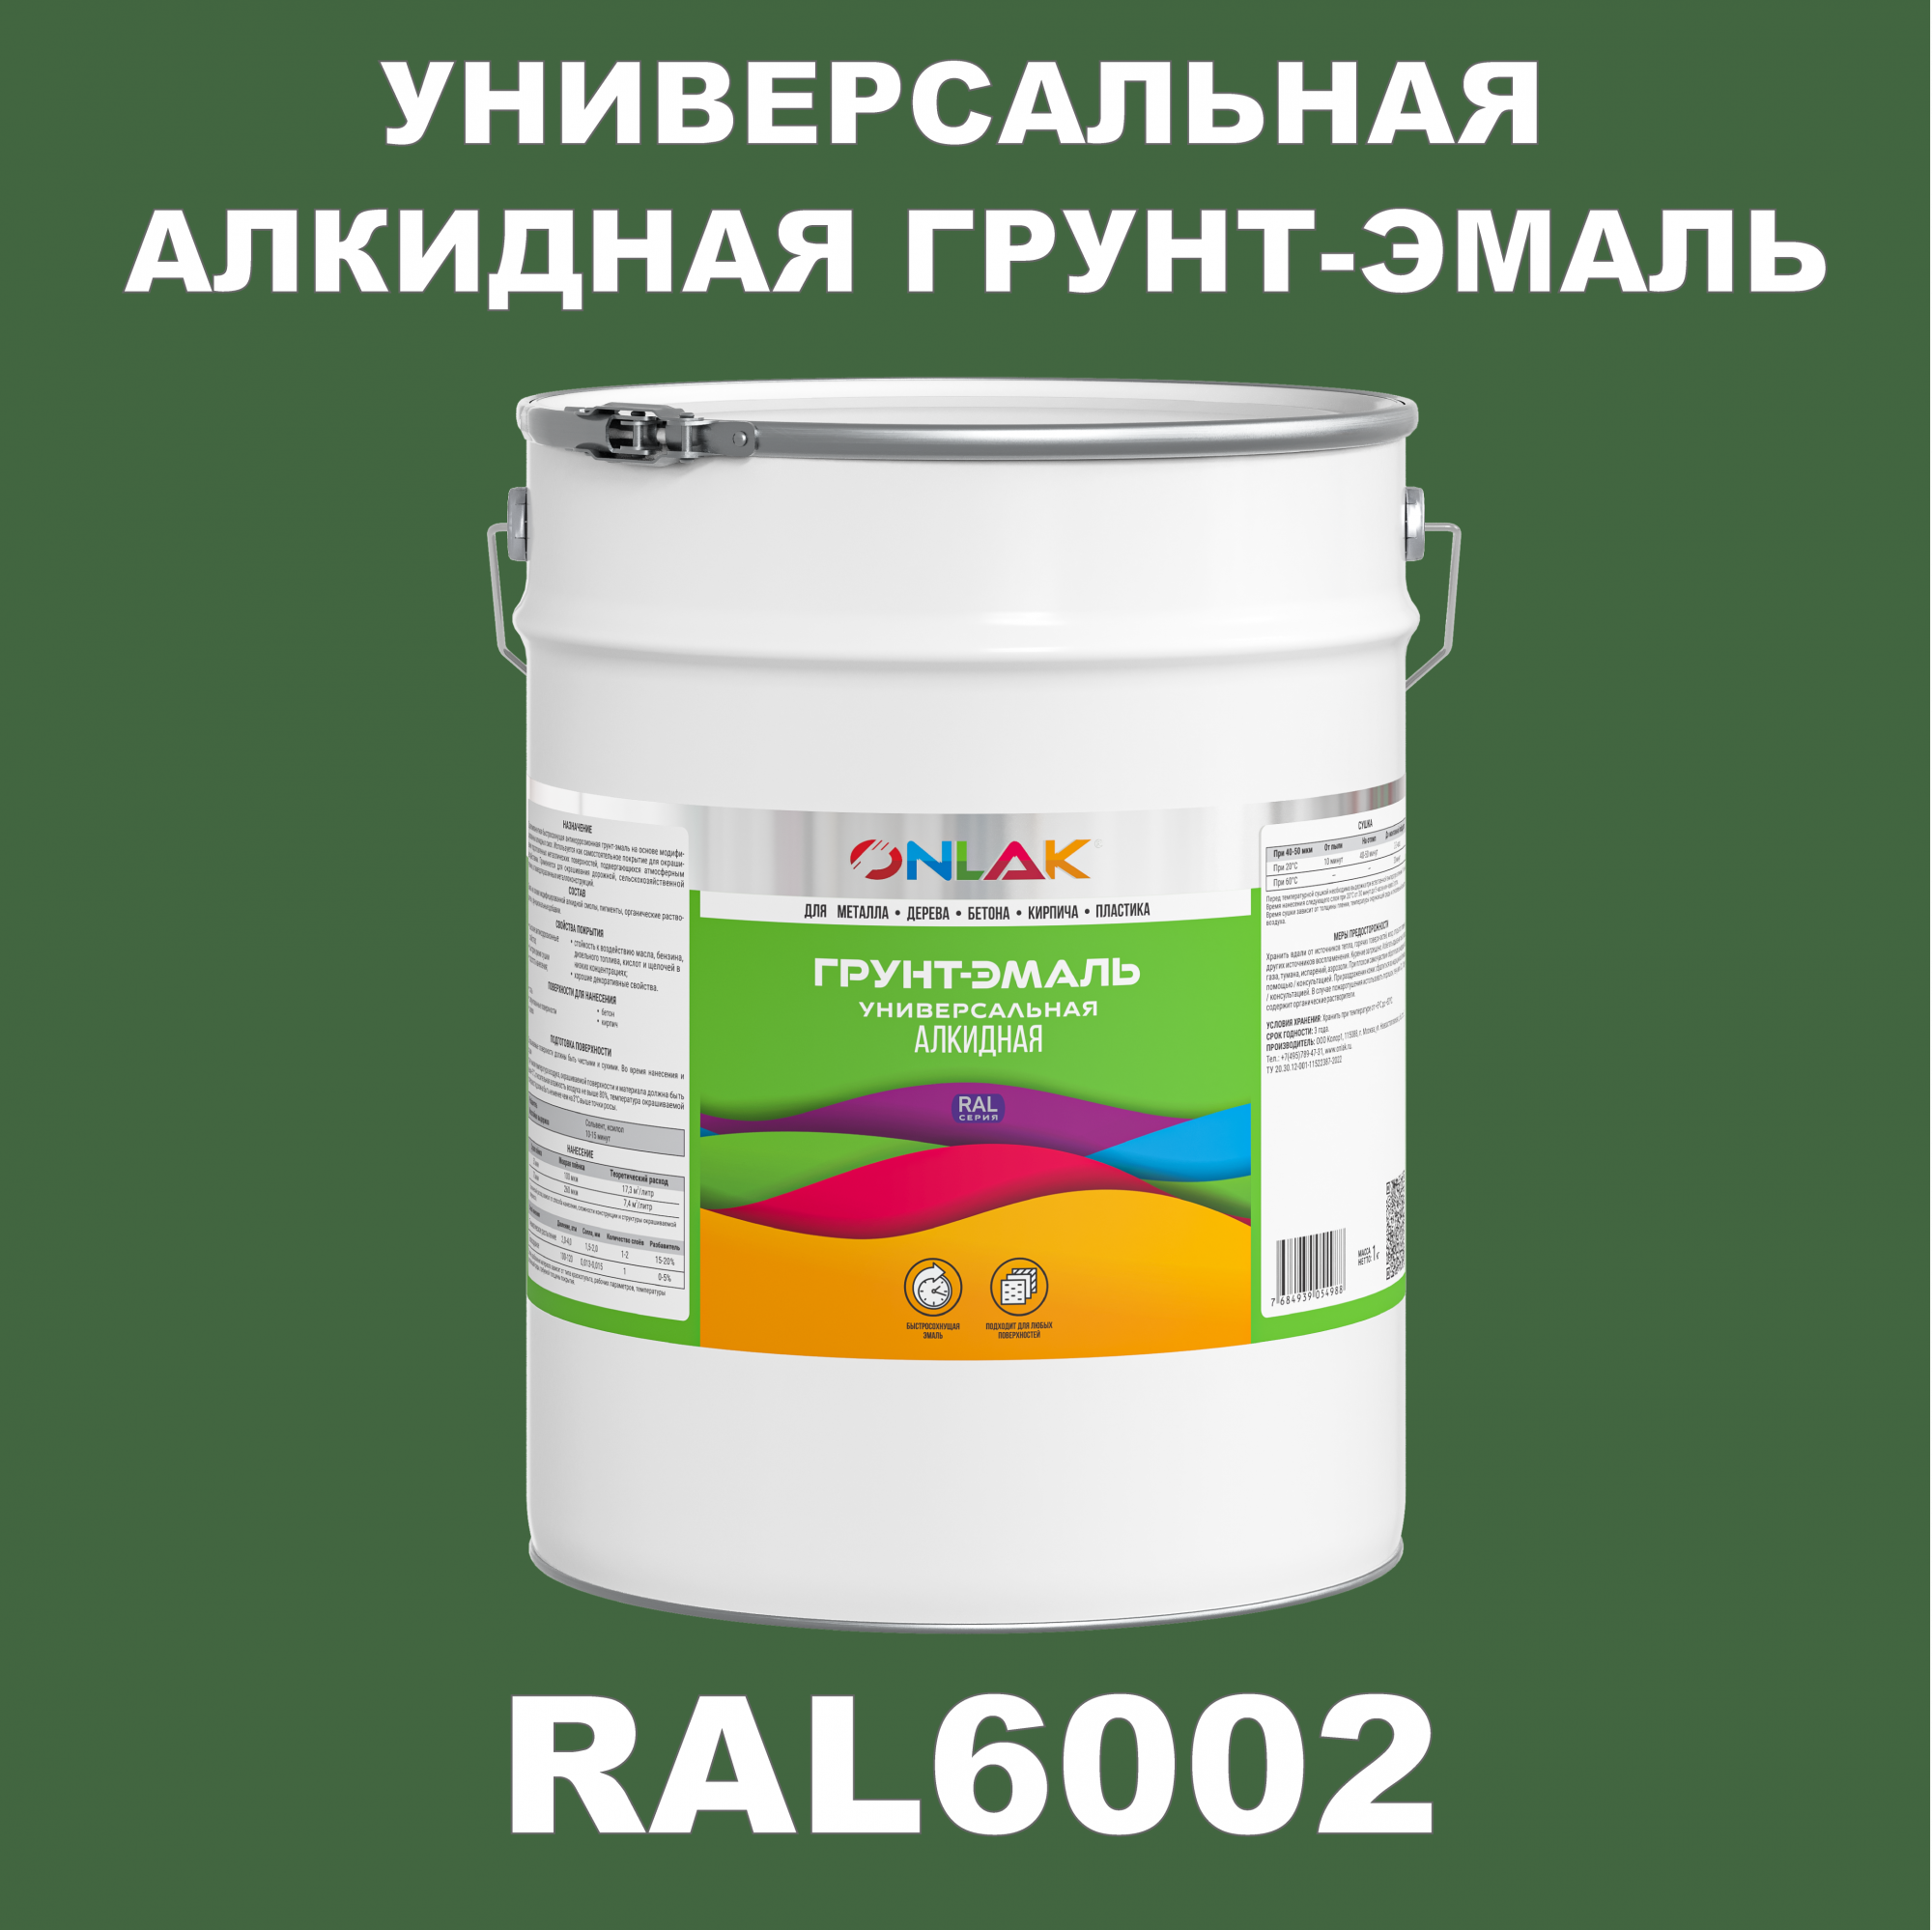 Грунт-эмаль ONLAK 1К RAL6002 антикоррозионная алкидная по металлу по ржавчине 20 кг грунт эмаль yollo по ржавчине алкидная серая 0 9 кг